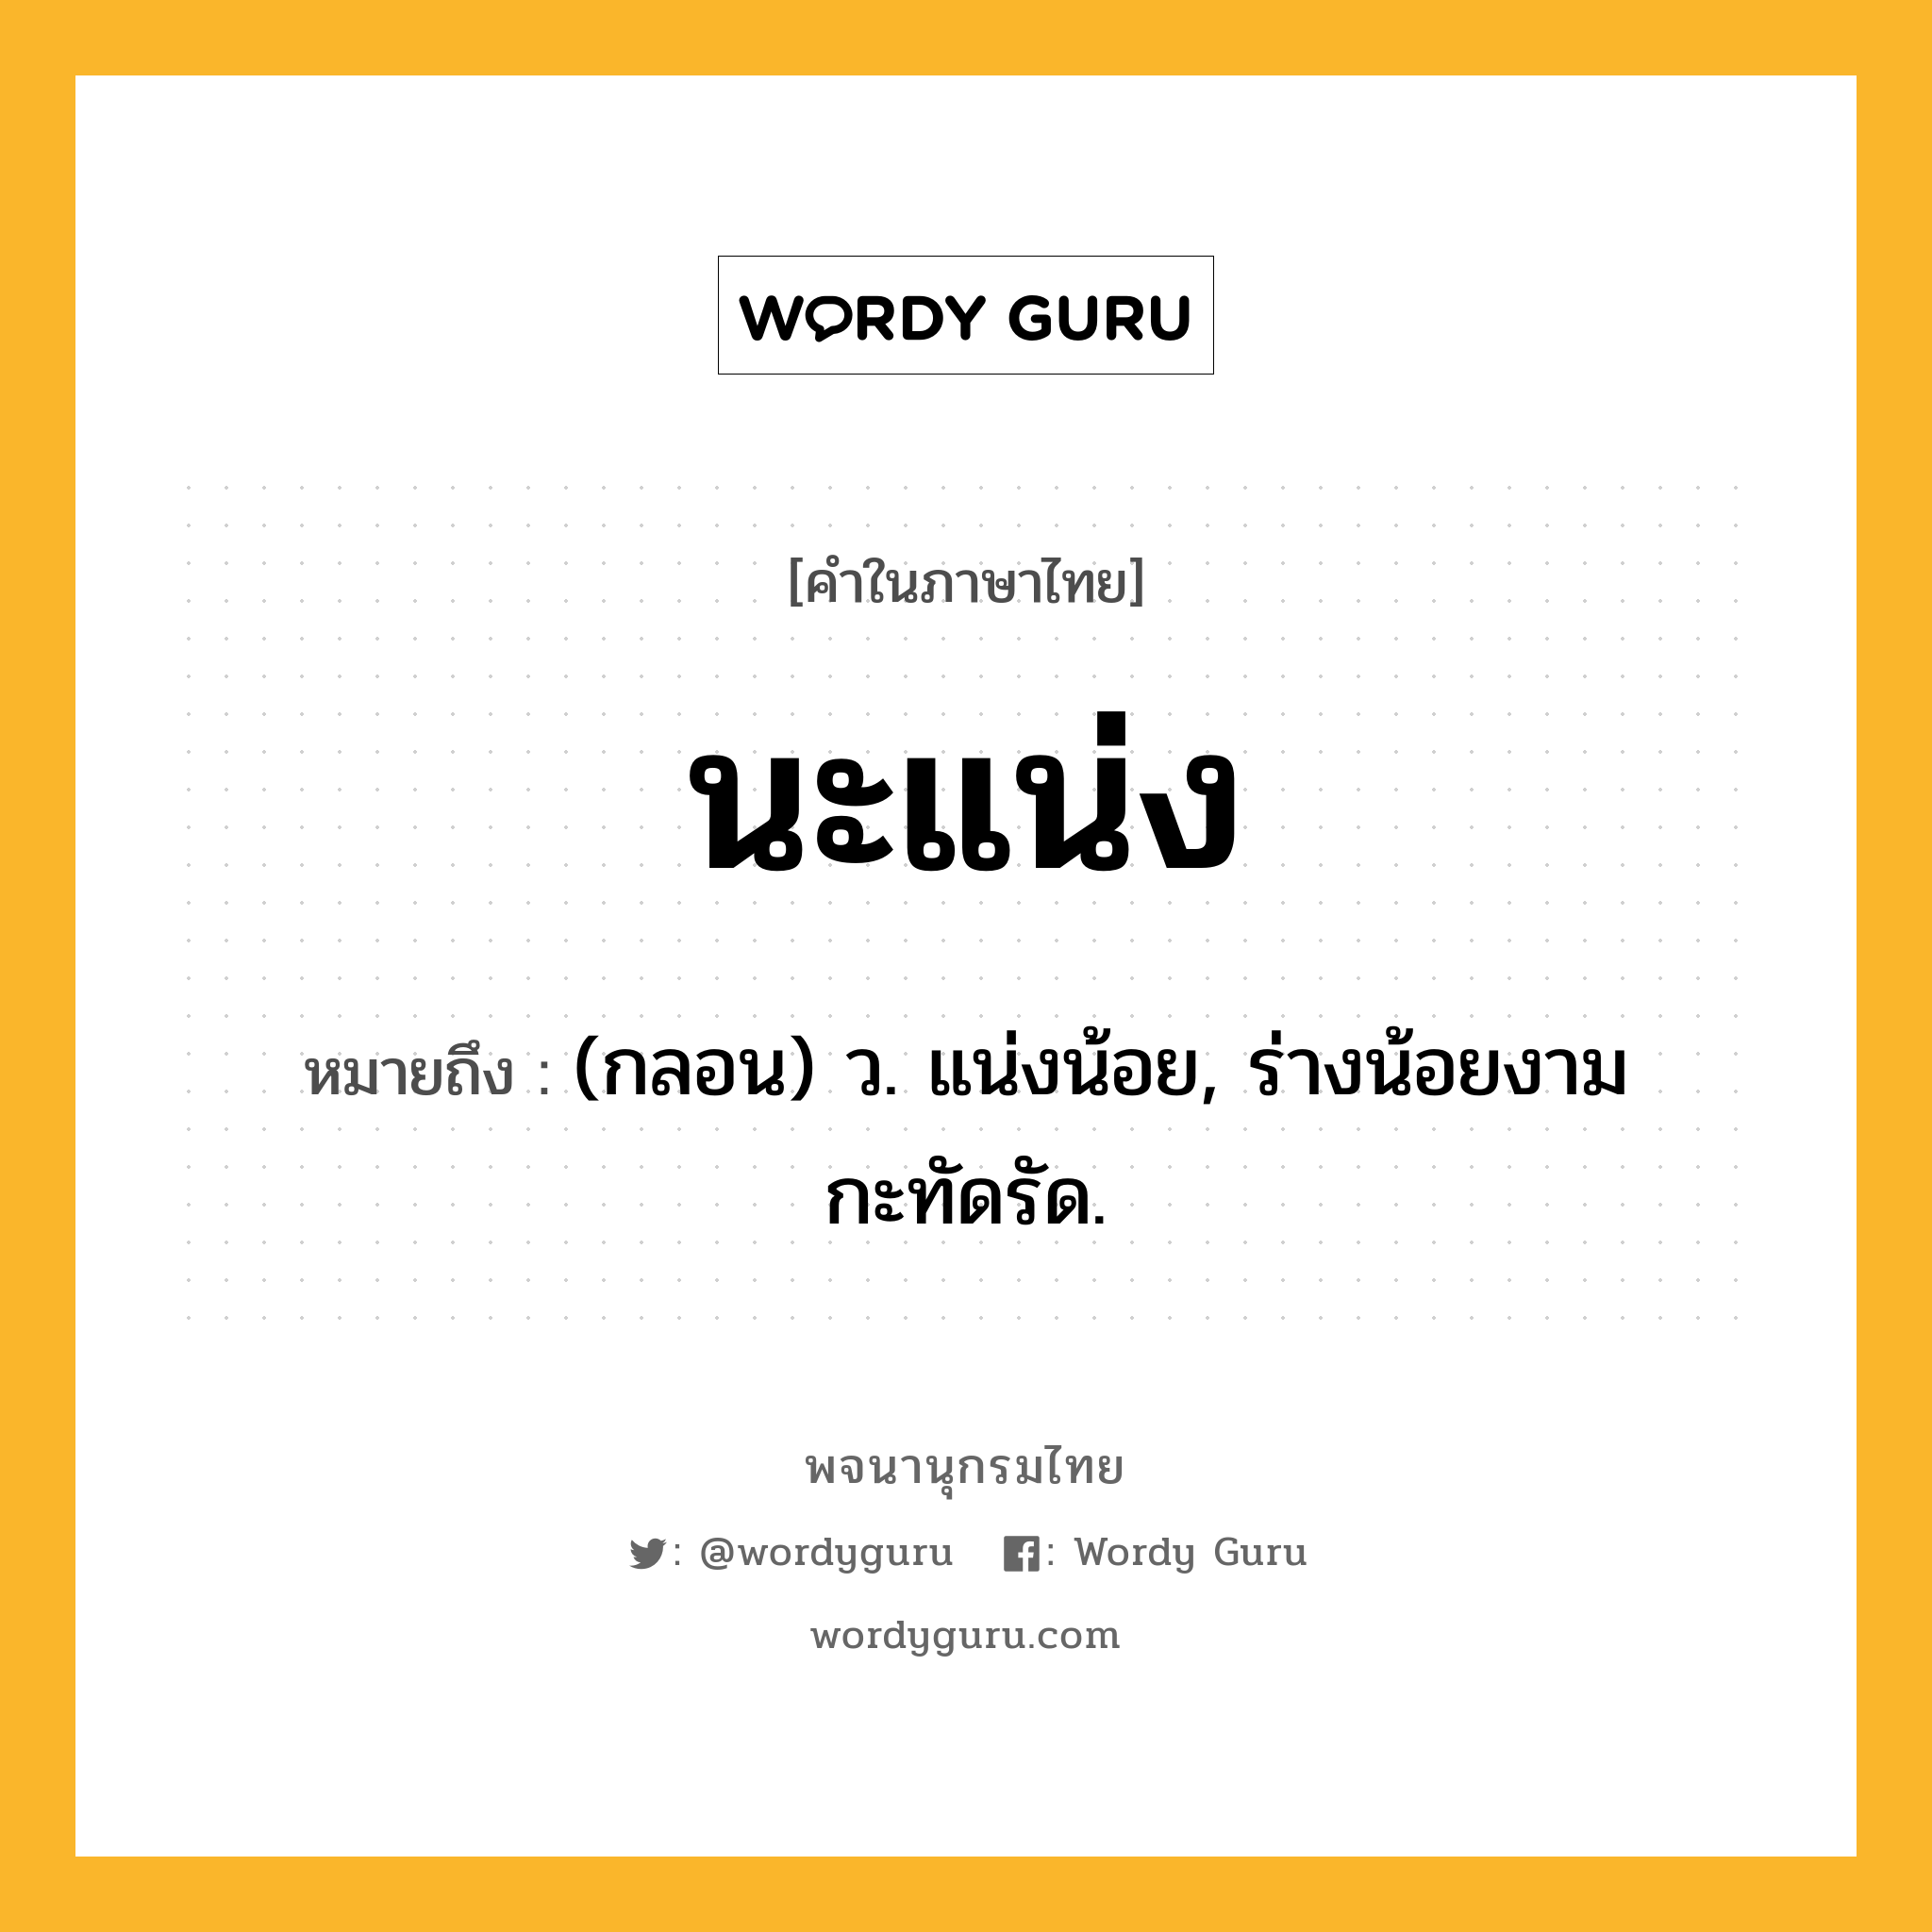 นะแน่ง หมายถึงอะไร?, คำในภาษาไทย นะแน่ง หมายถึง (กลอน) ว. แน่งน้อย, ร่างน้อยงามกะทัดรัด.